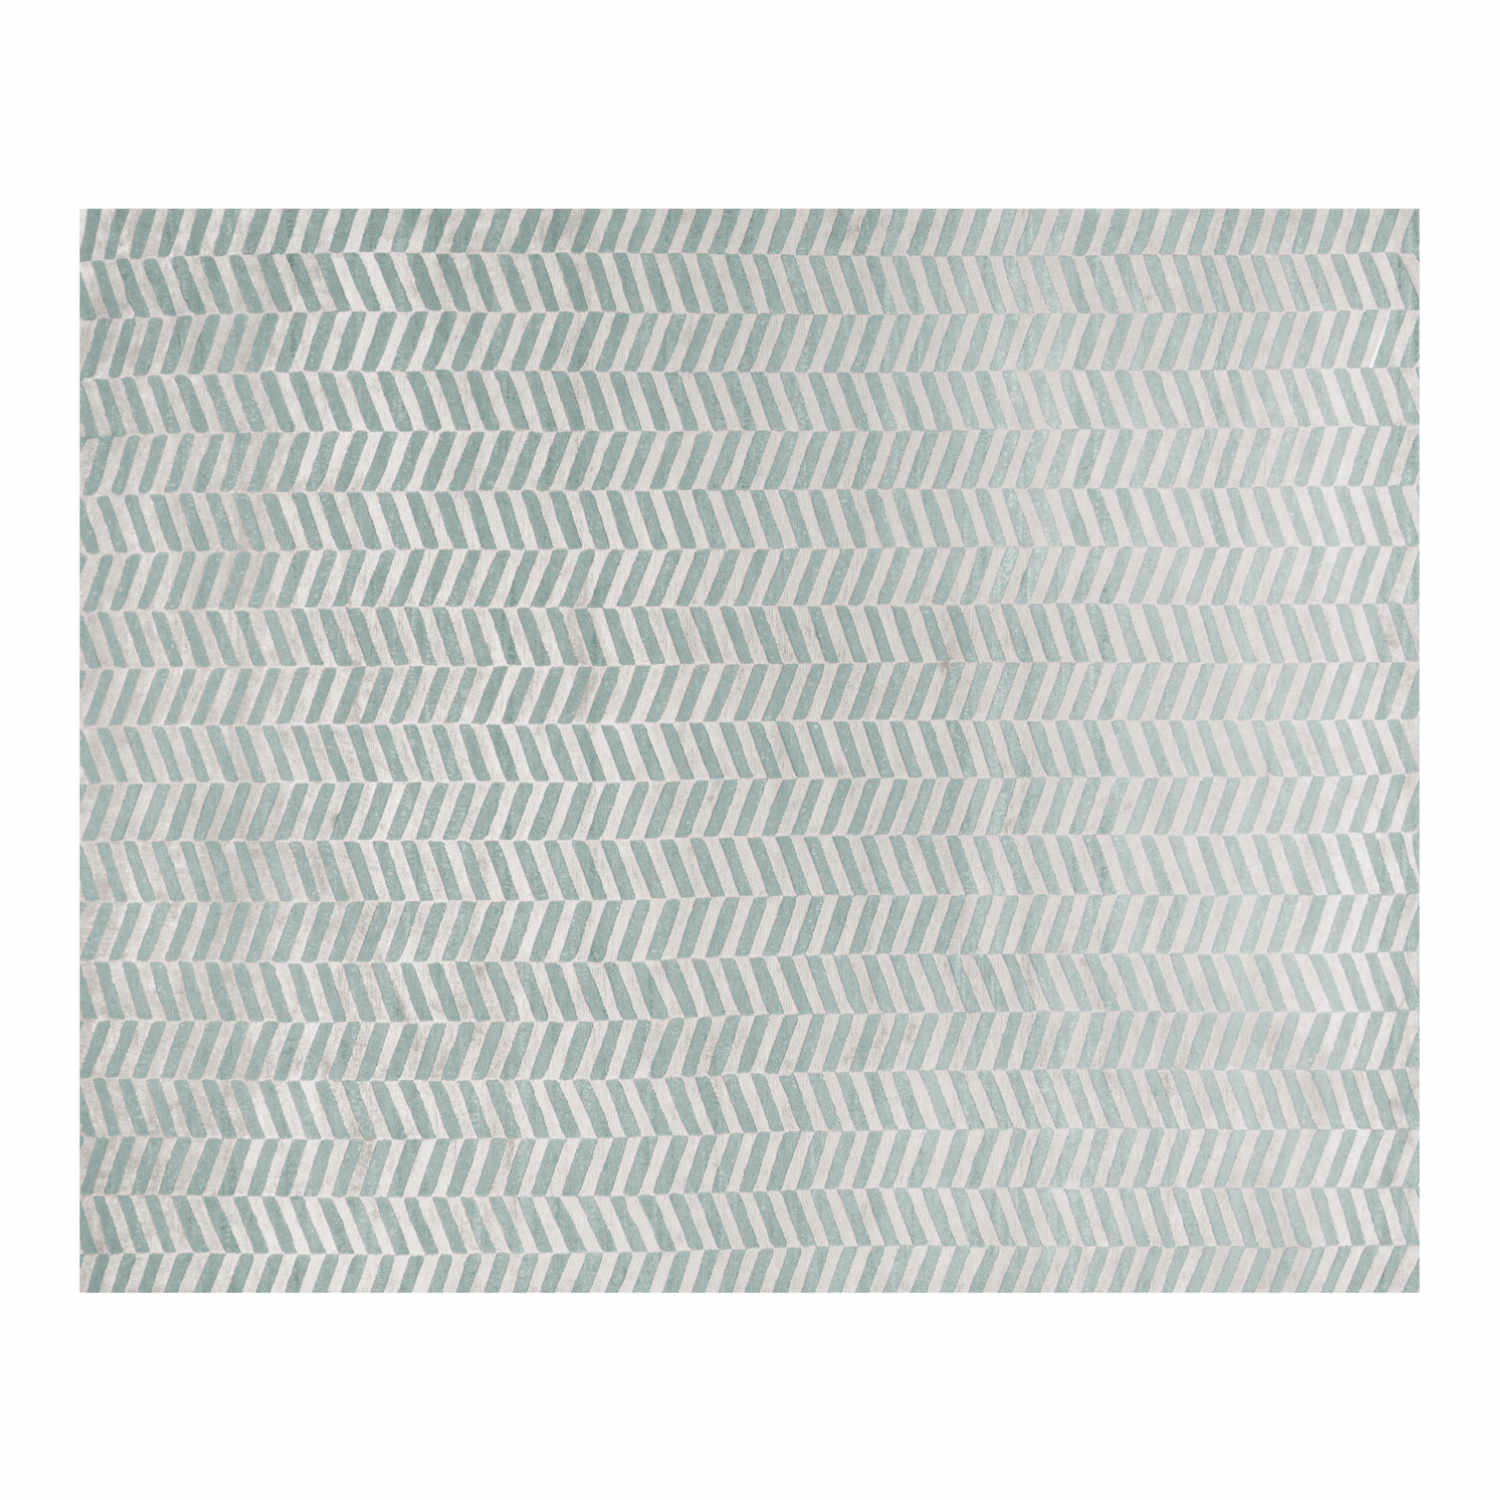 eVid Teppich, Farbe mirage gray fog von miinu